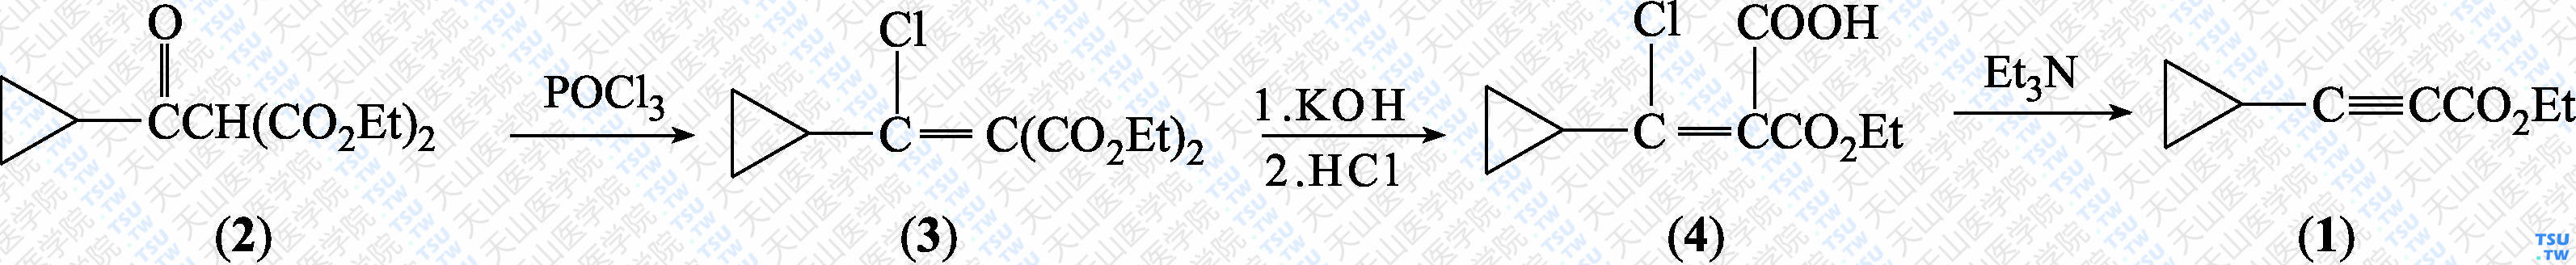 环丙基丙炔酸乙酯（分子式：C<sub>8</sub>H<sub>10</sub>O<sub>2</sub>）的合成方法路线及其结构式